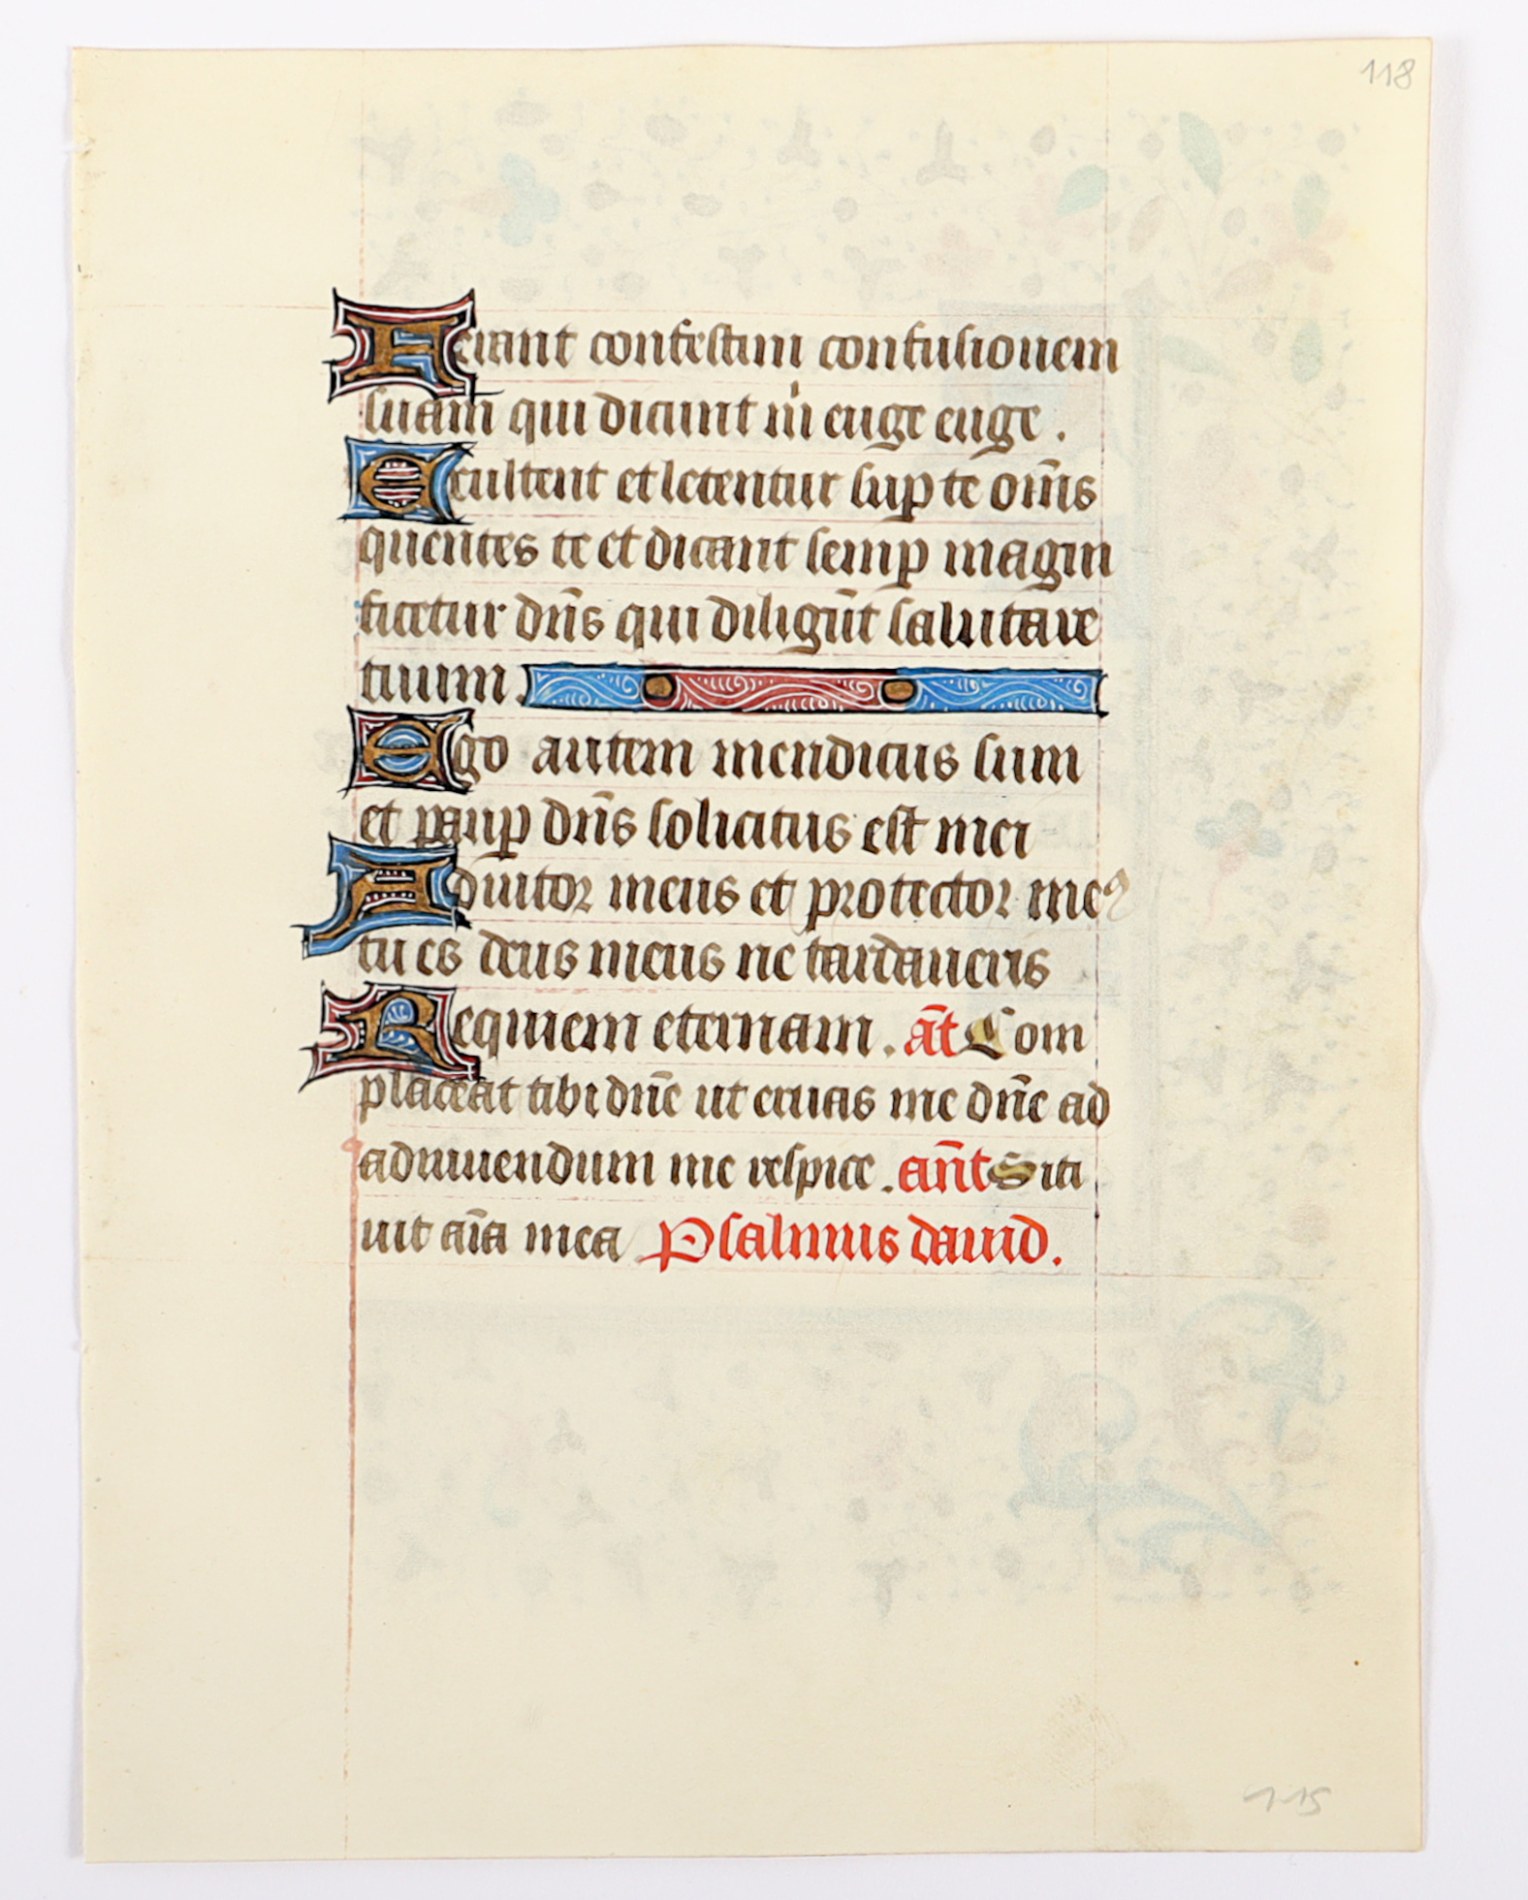 BLATT AUS EINEM FRANZöSISCHEN SKRIPTORIUM, wohl Troyes, um 1450, beidseitig, mit farbigen Initialen - Image 2 of 2